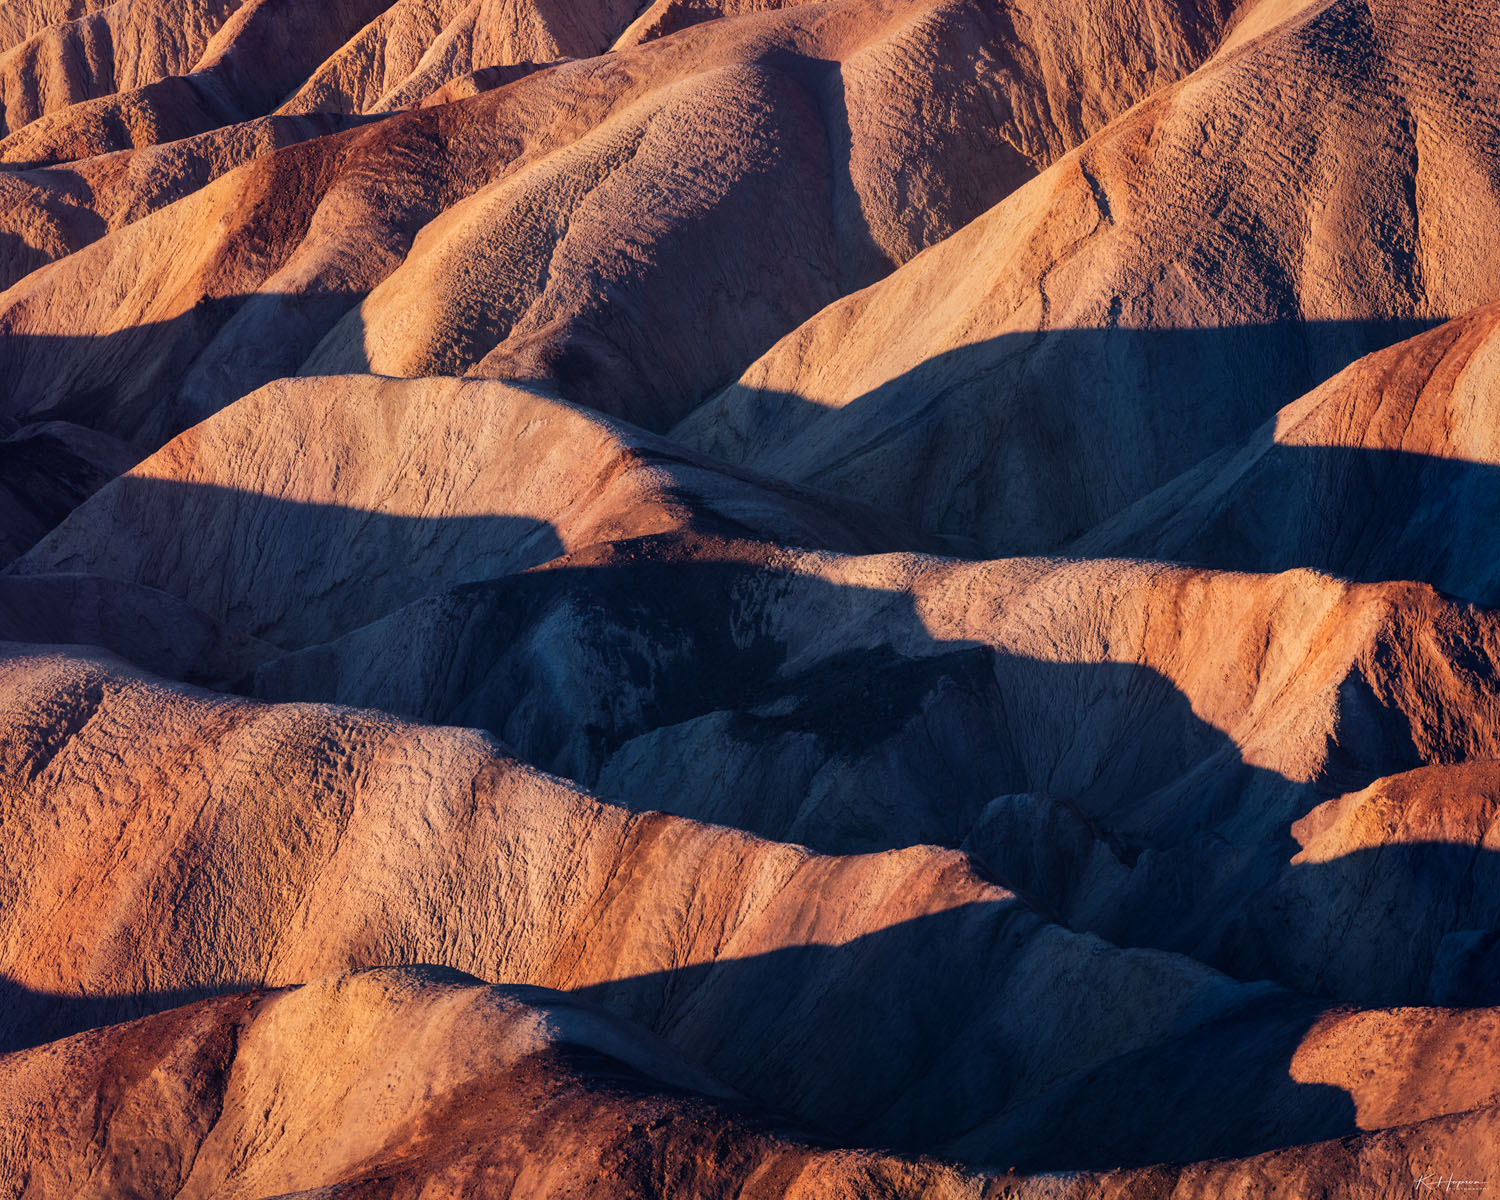 Soft morning light illuminating rolling hills in Death Valley, California. 